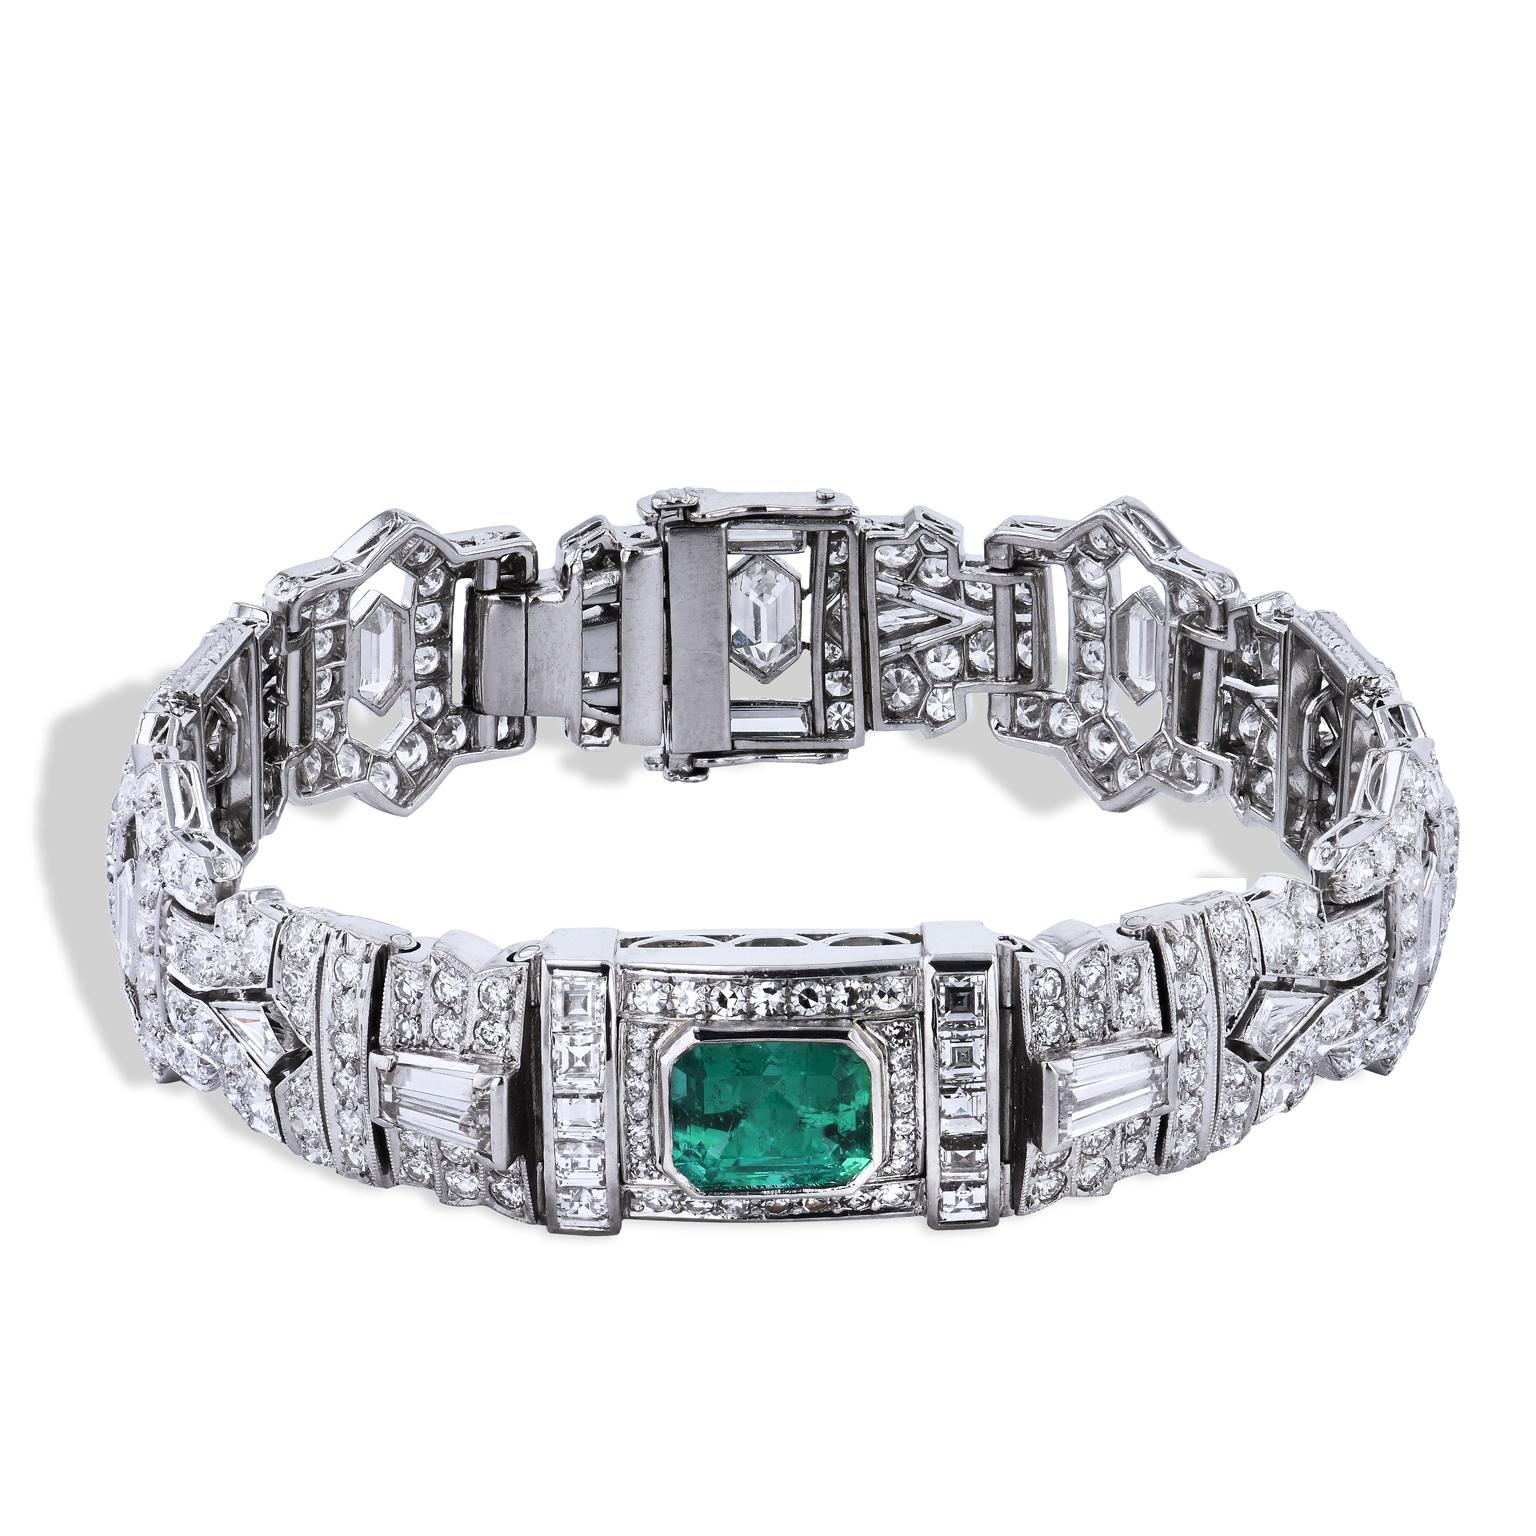 A.G.L. Zertifiziertes Platinarmband mit 1,96 Smaragden und 16 Karat Diamanten im Art Deco Stil

Dieses atemberaubende Stück im Art-Déco-Stil diente früher zur Aufbewahrung einer Uhr.  
Er wurde von H&H Jewels modifiziert, um einen erstaunlichen